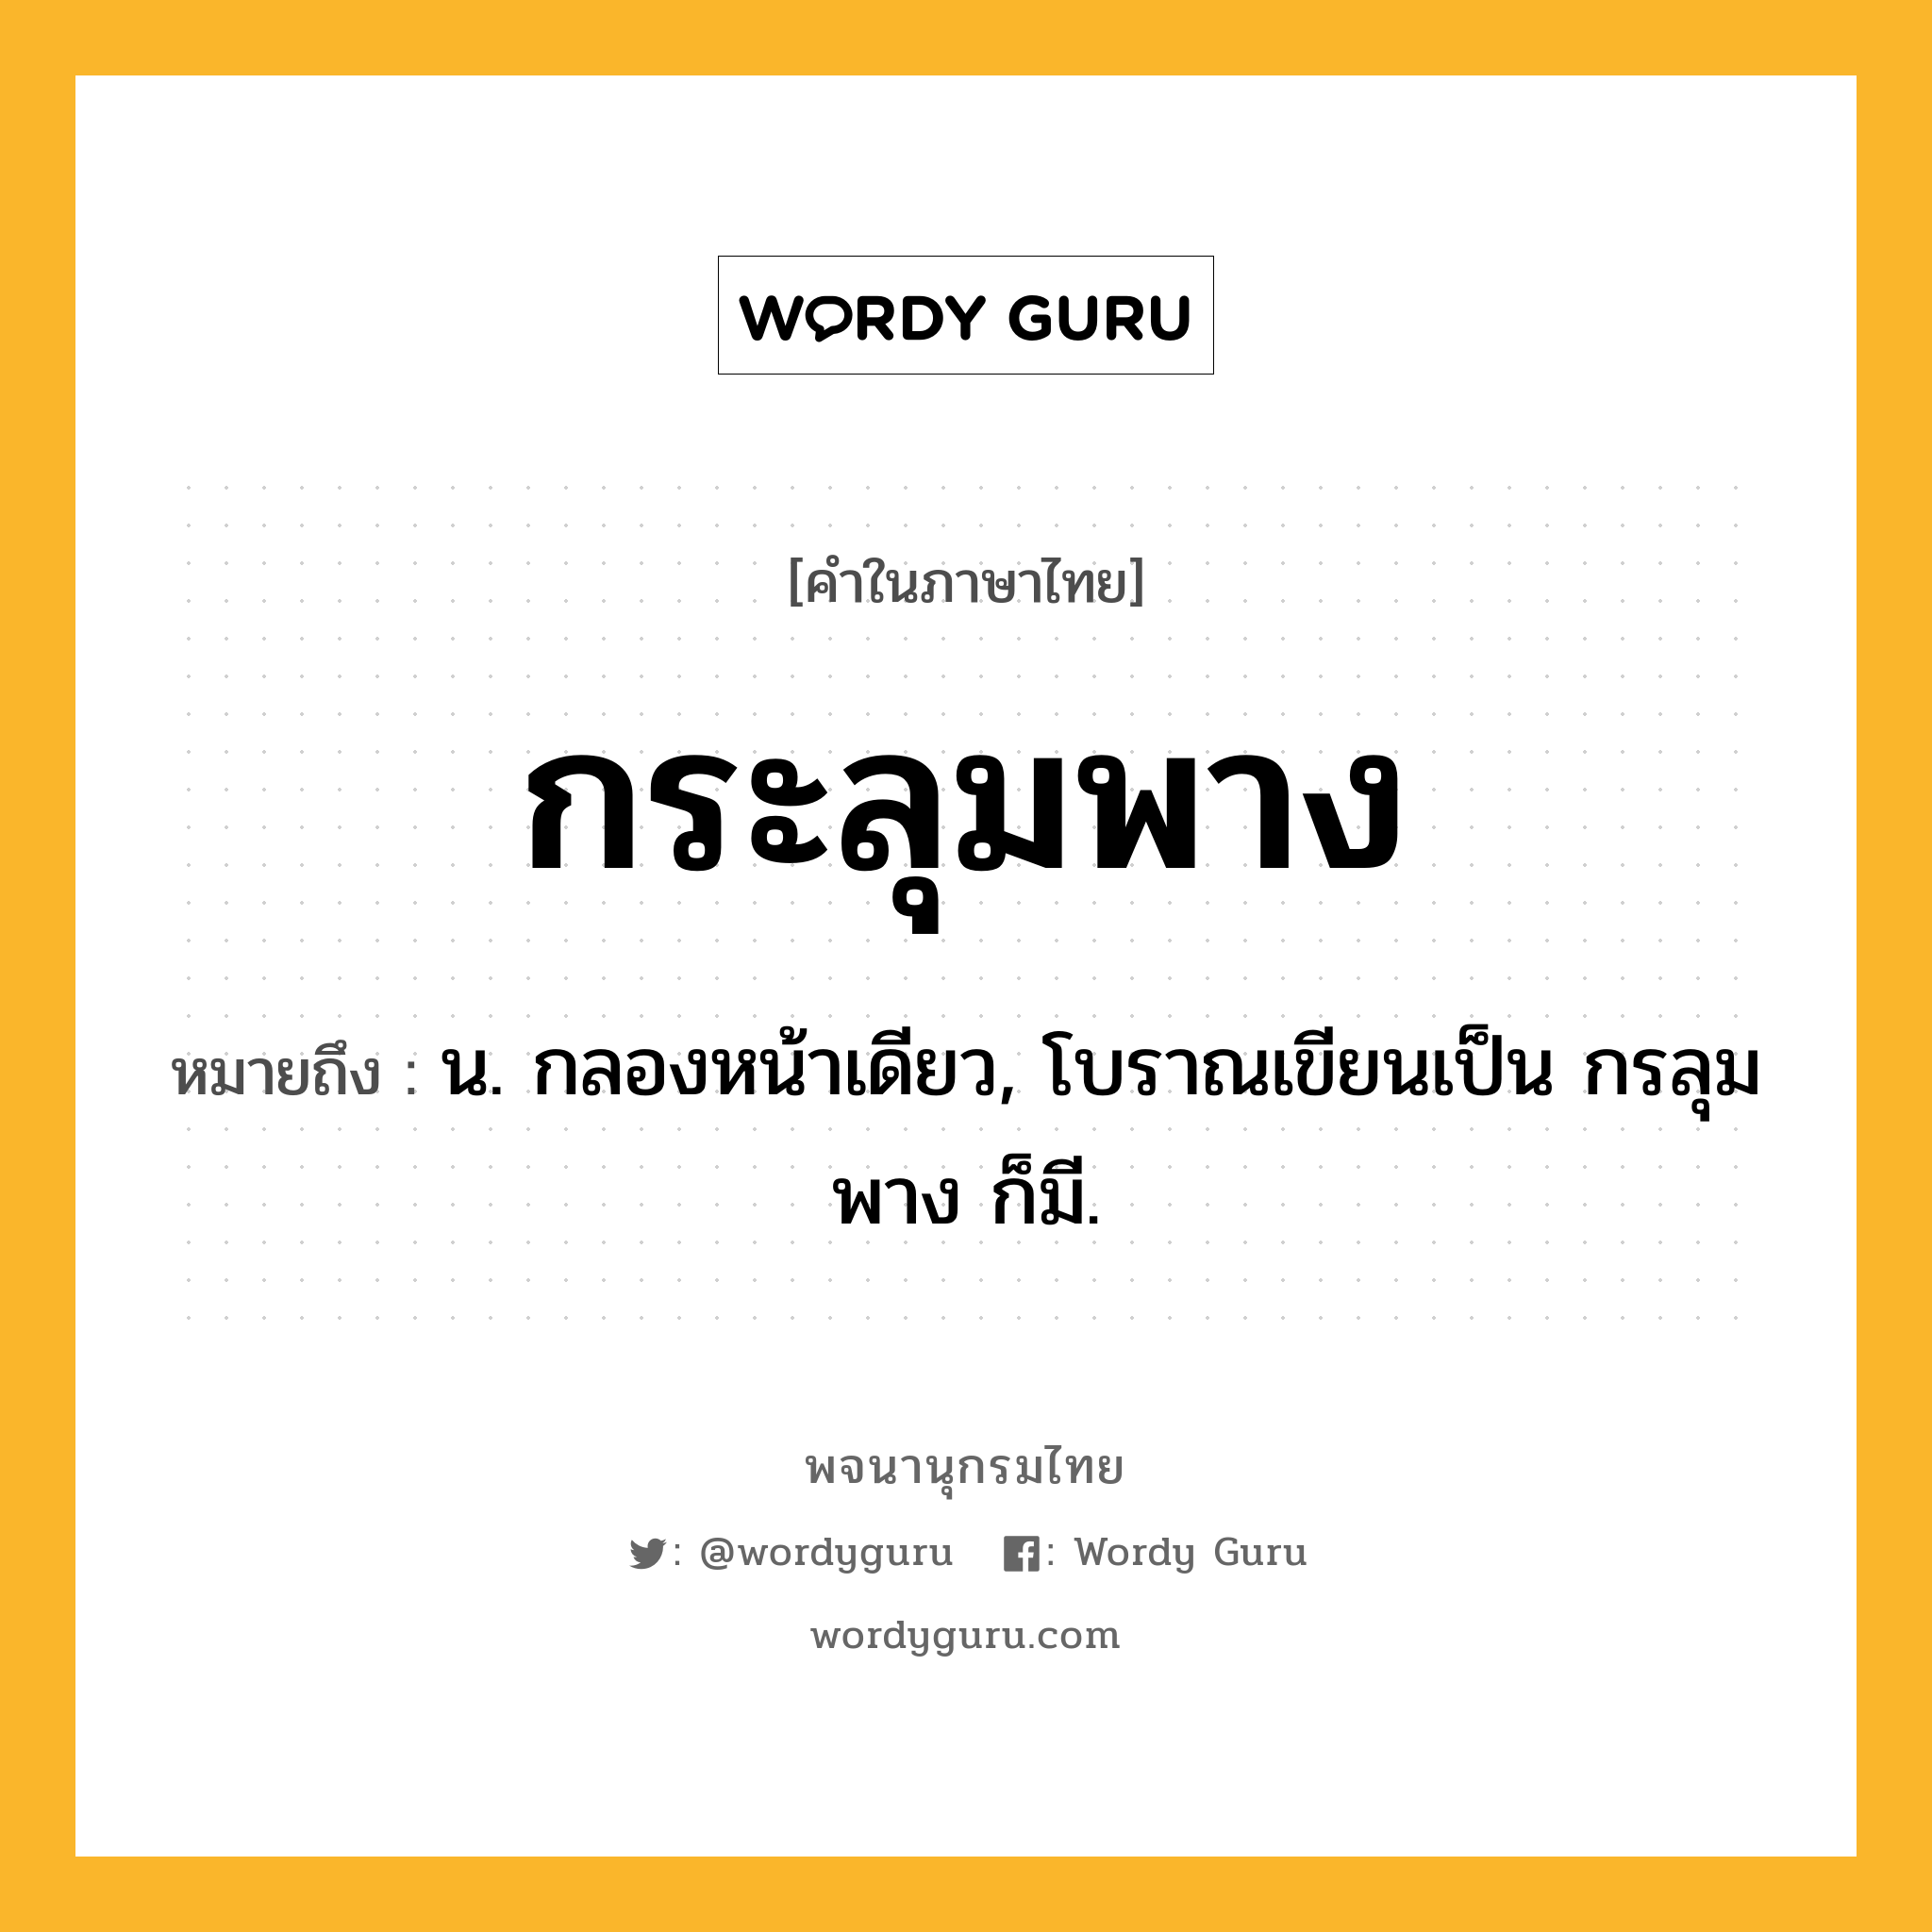 กระลุมพาง ความหมาย หมายถึงอะไร?, คำในภาษาไทย กระลุมพาง หมายถึง น. กลองหน้าเดียว, โบราณเขียนเป็น กรลุมพาง ก็มี.